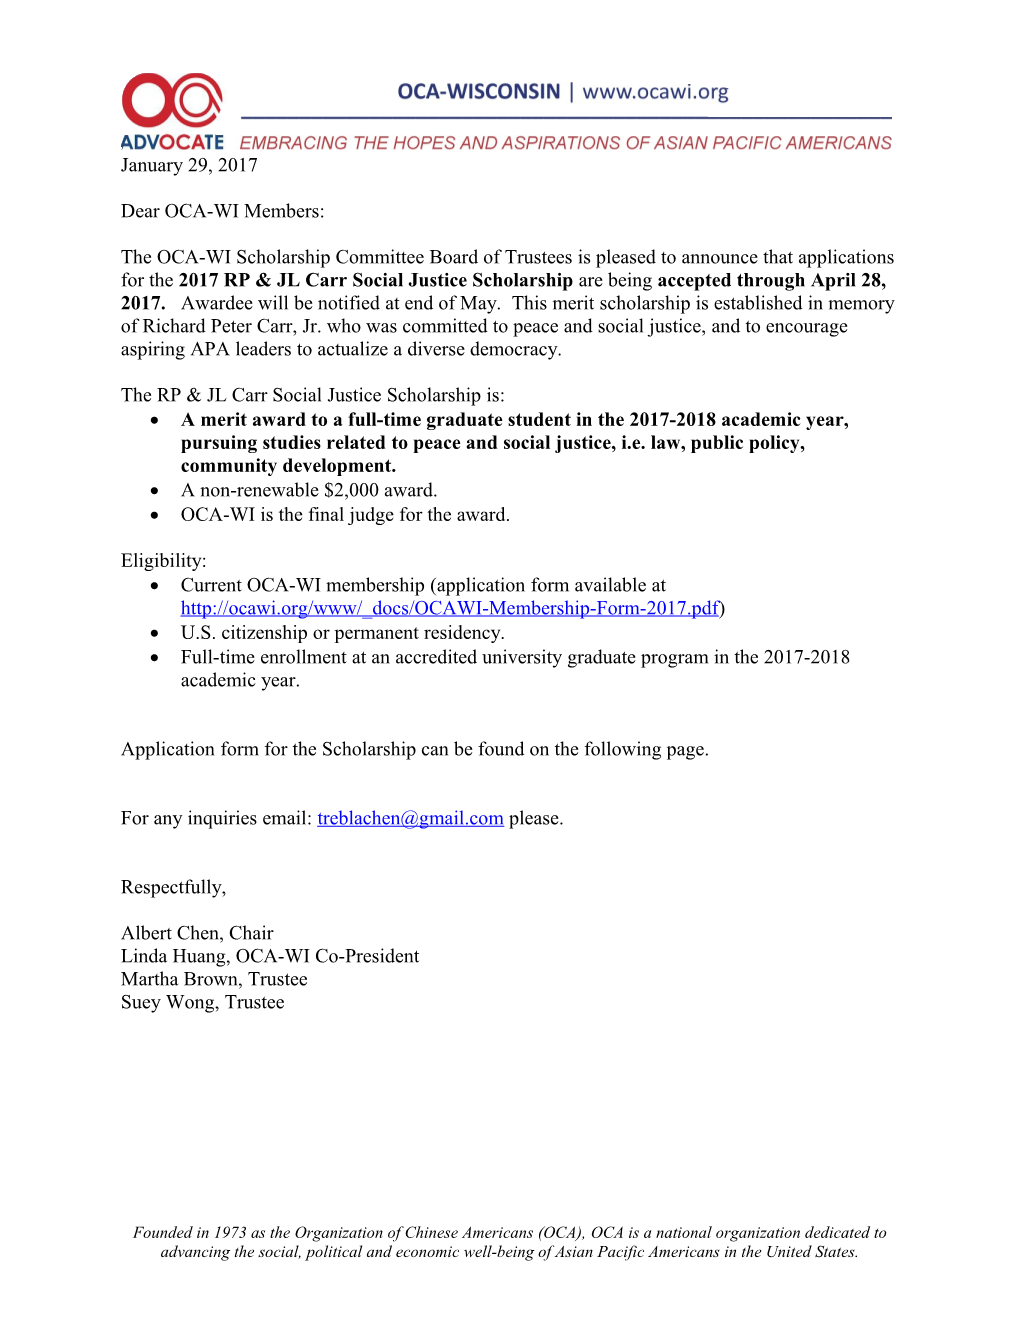 OCA Scholarship Application